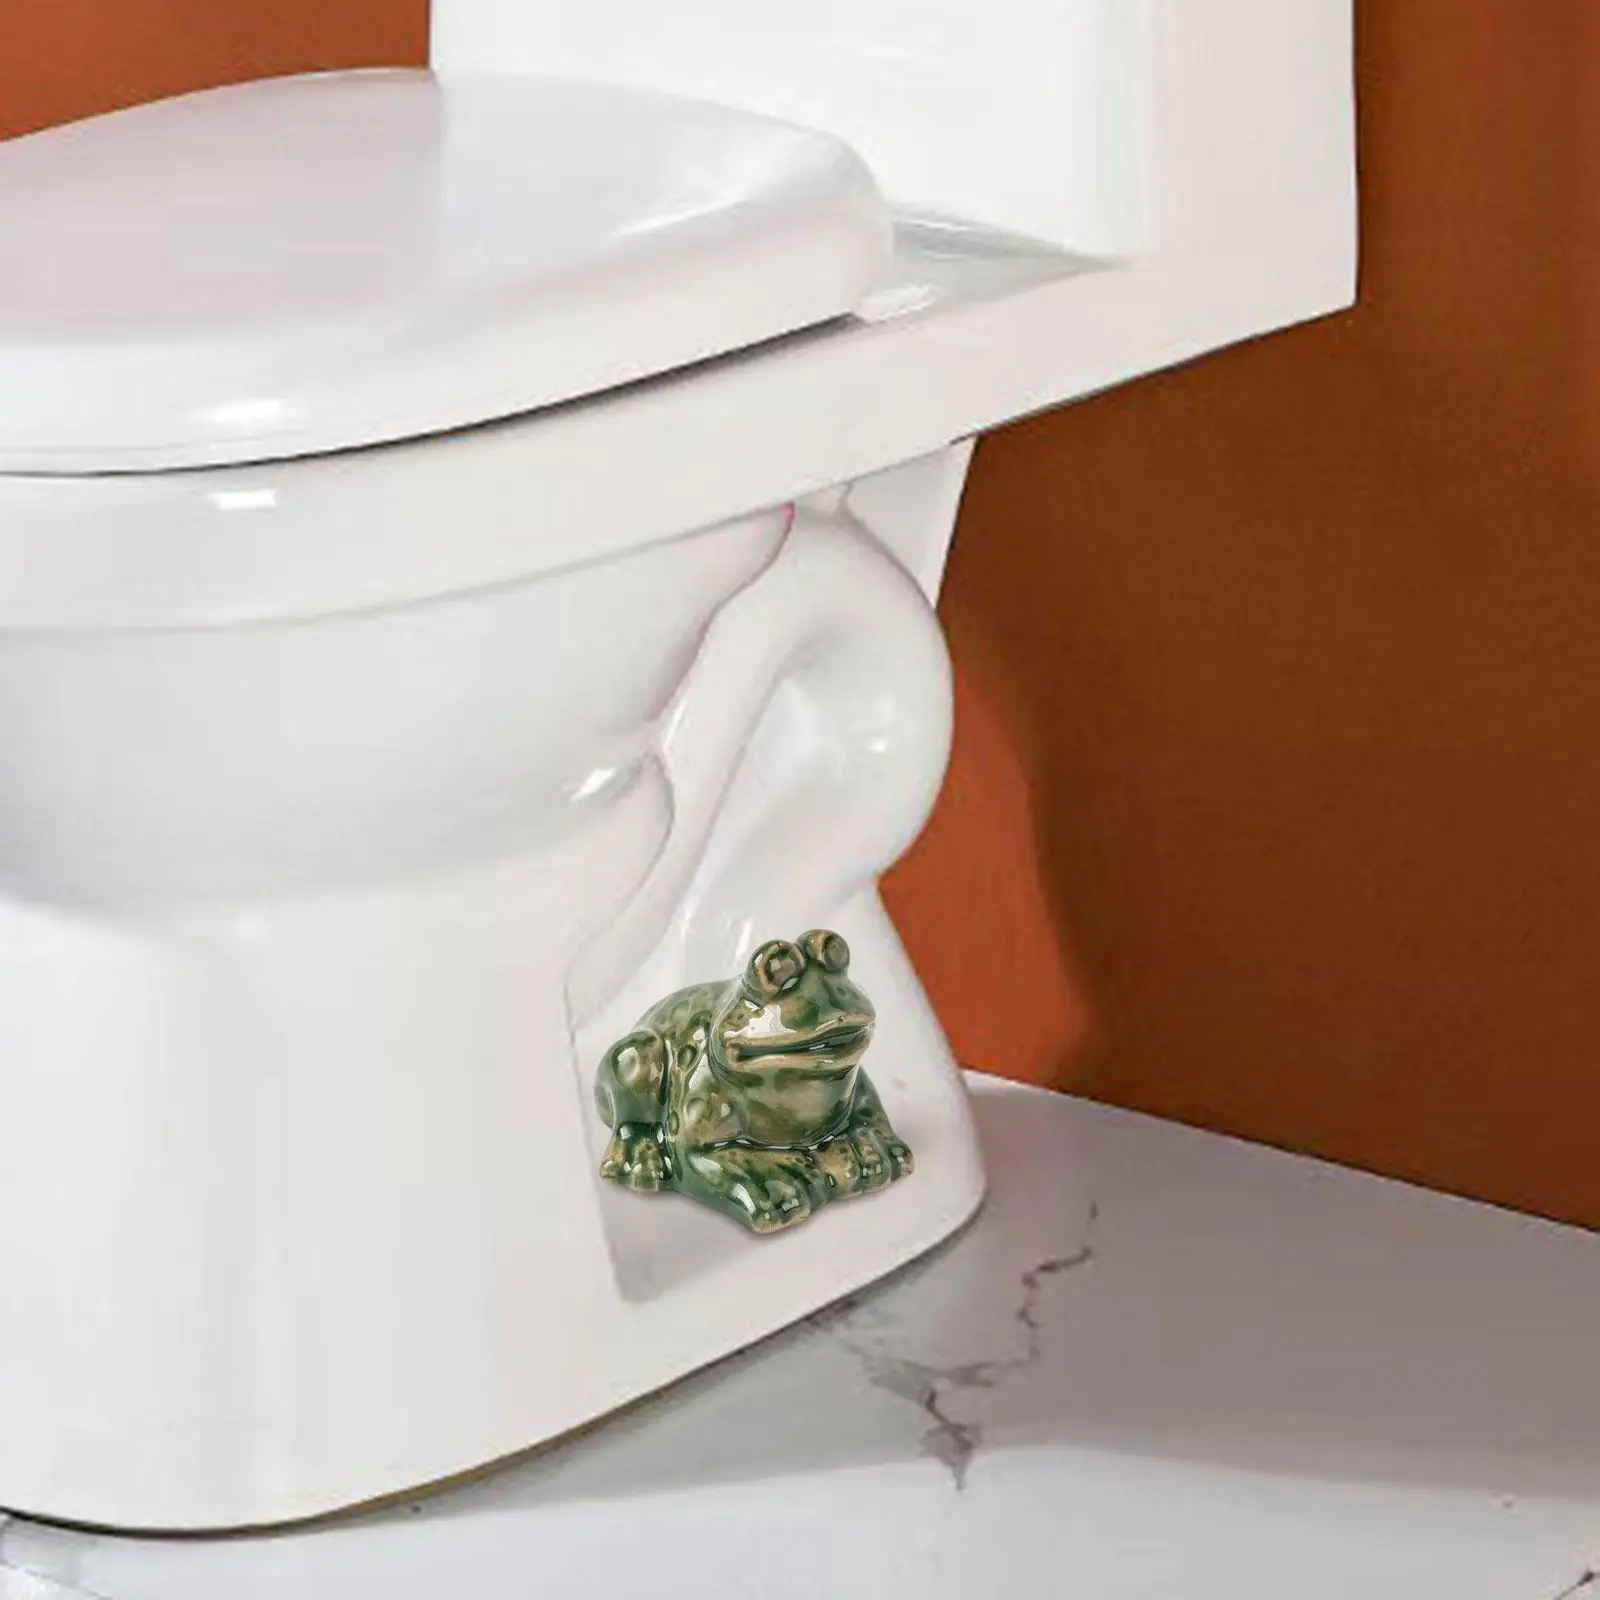 Toiletboutdop Schattige Kikker Bouten Deksel Voor Slaapzaalaccessoires